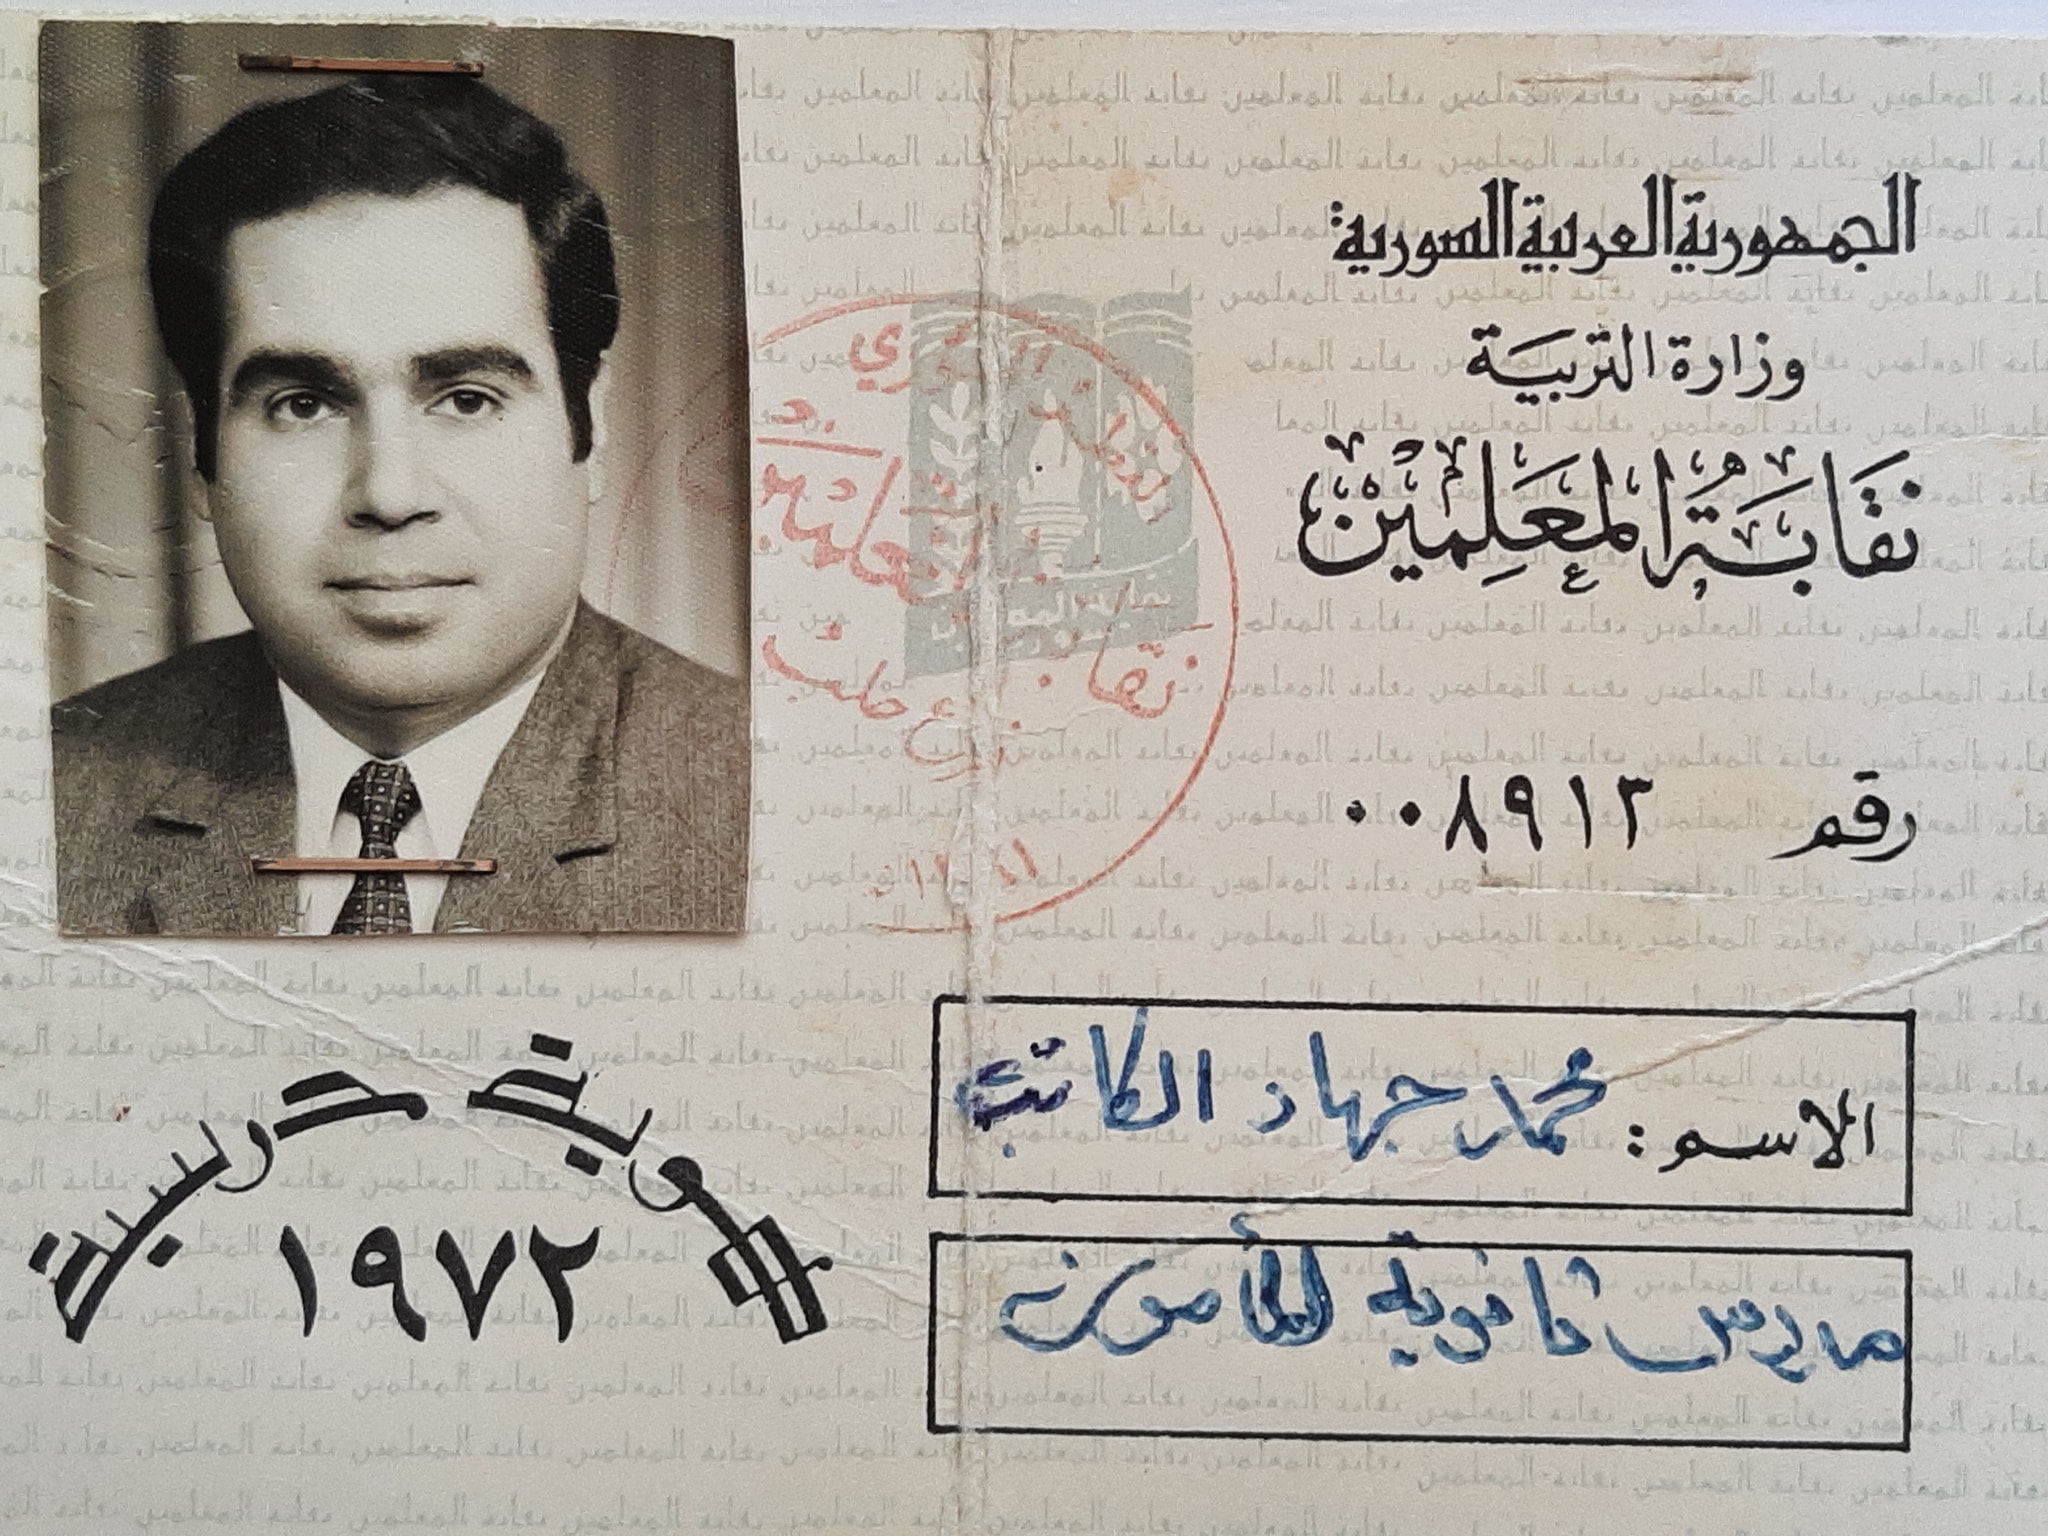 التاريخ السوري المعاصر - بطاقة نقابية للمدرس محمد جهاد الكاتب عام 1972